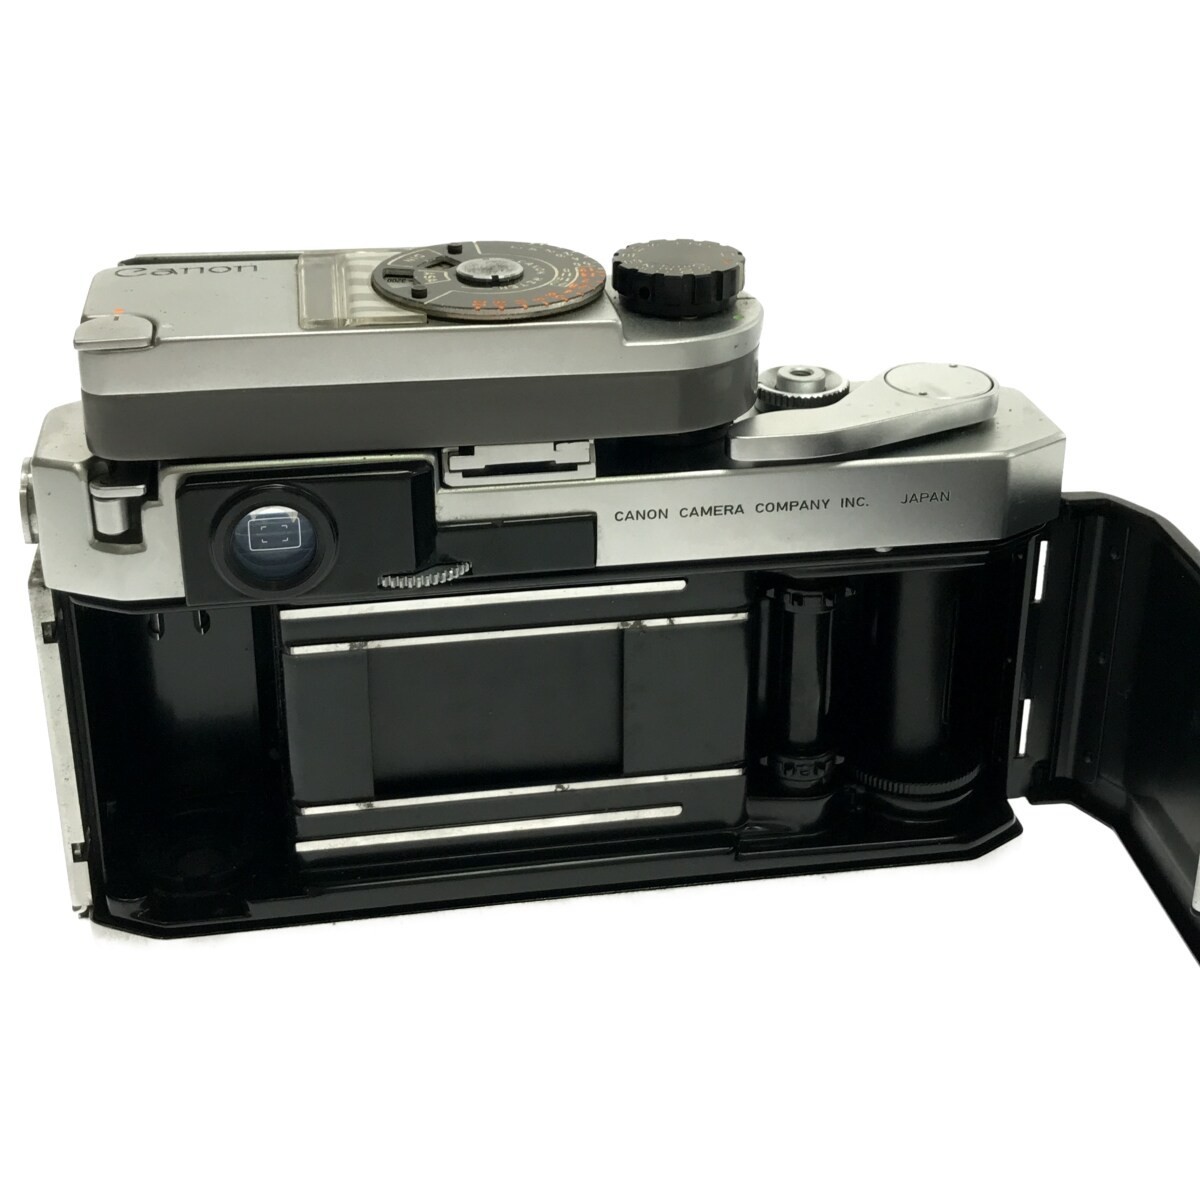 注目ショップ Canon VI L 6L 型 LENS 50mm F1.8 キャノン レンジ